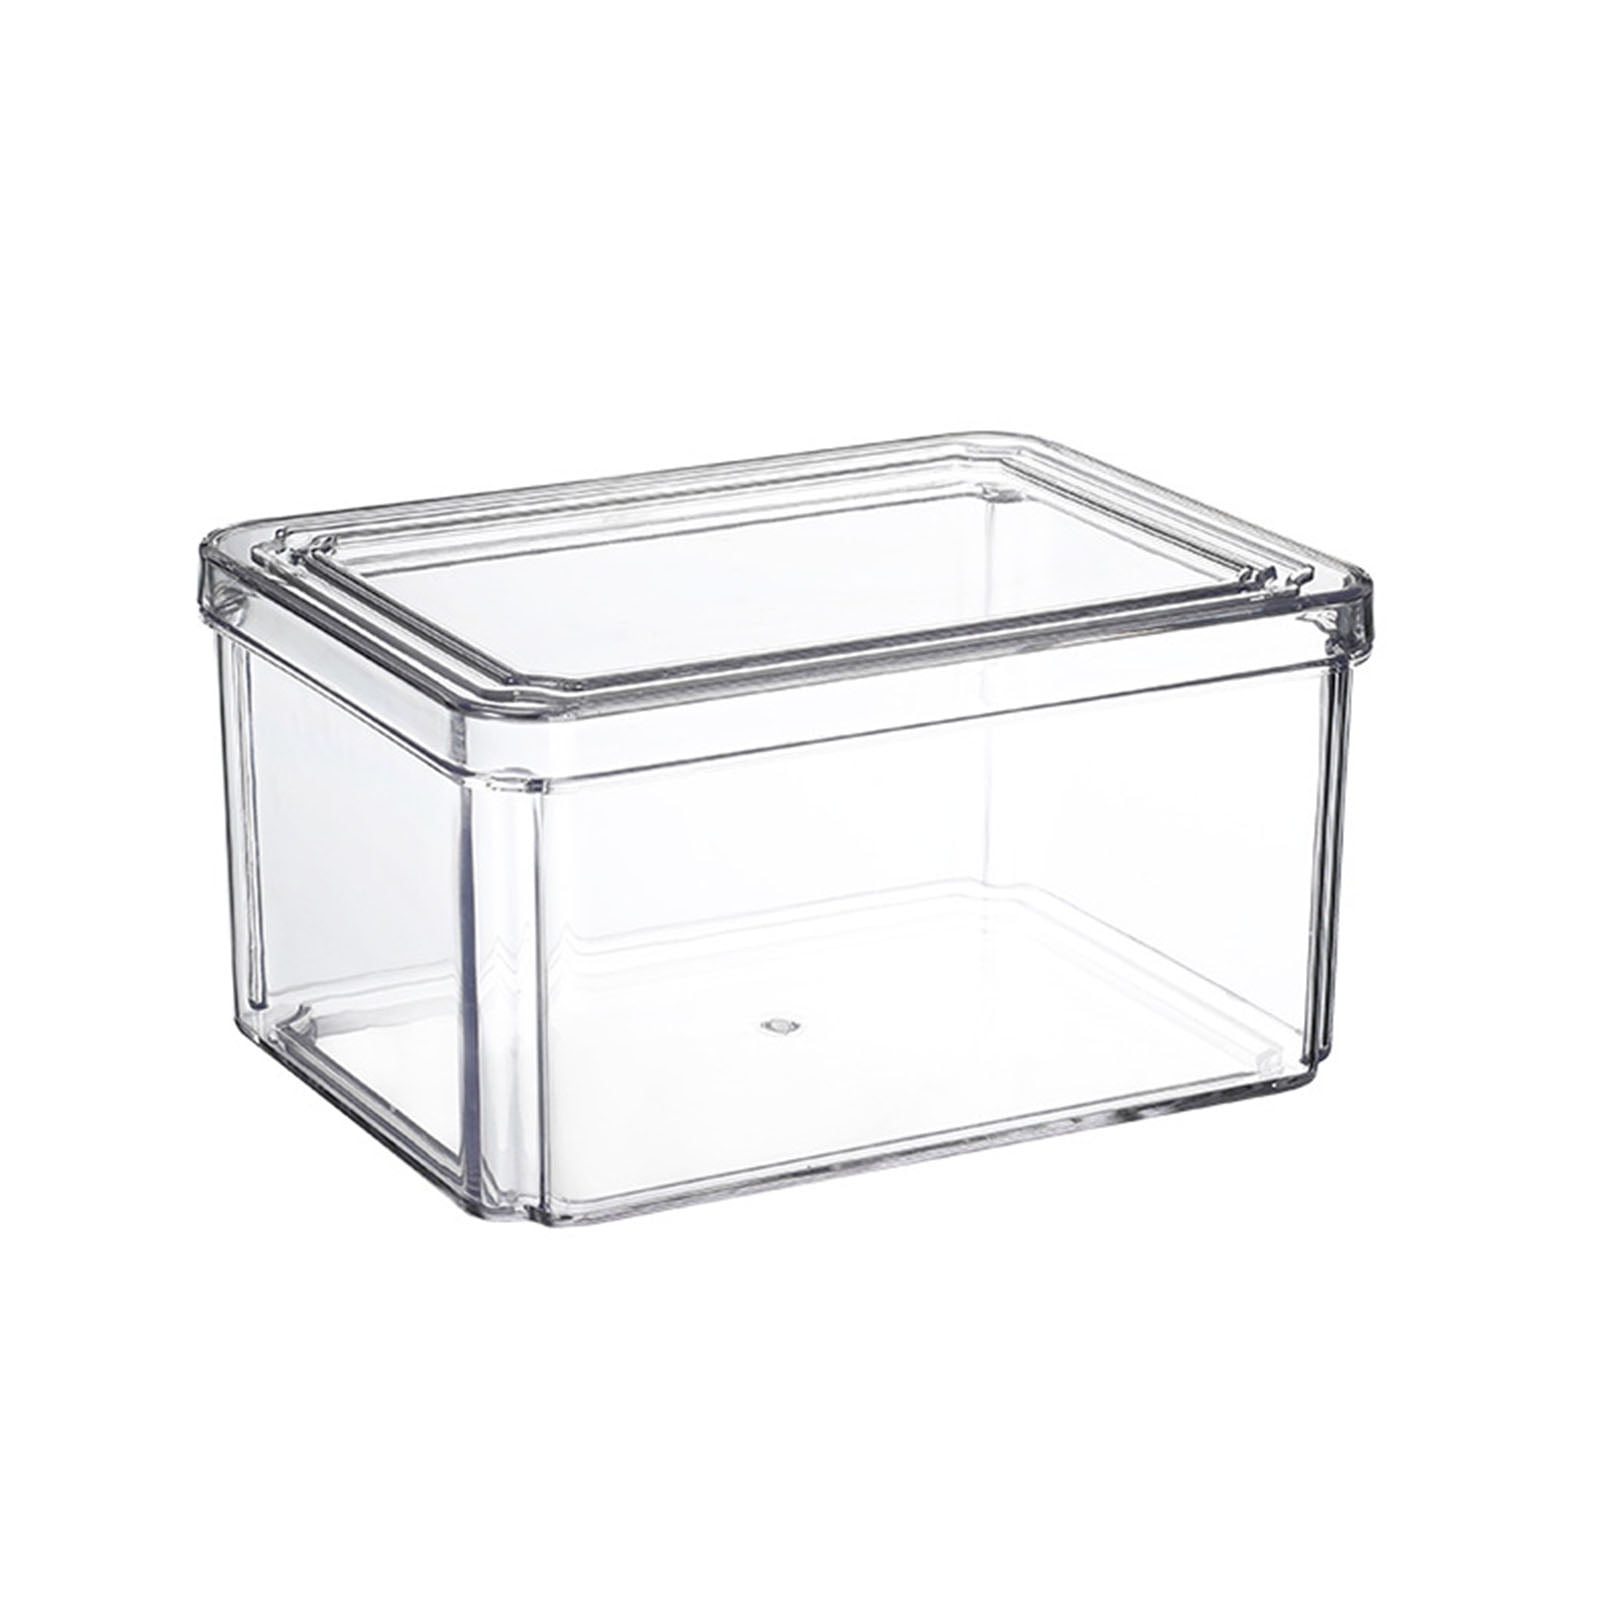 18x26x9-Inch Polycarbonate Food Storage Box Winco PFF-9 